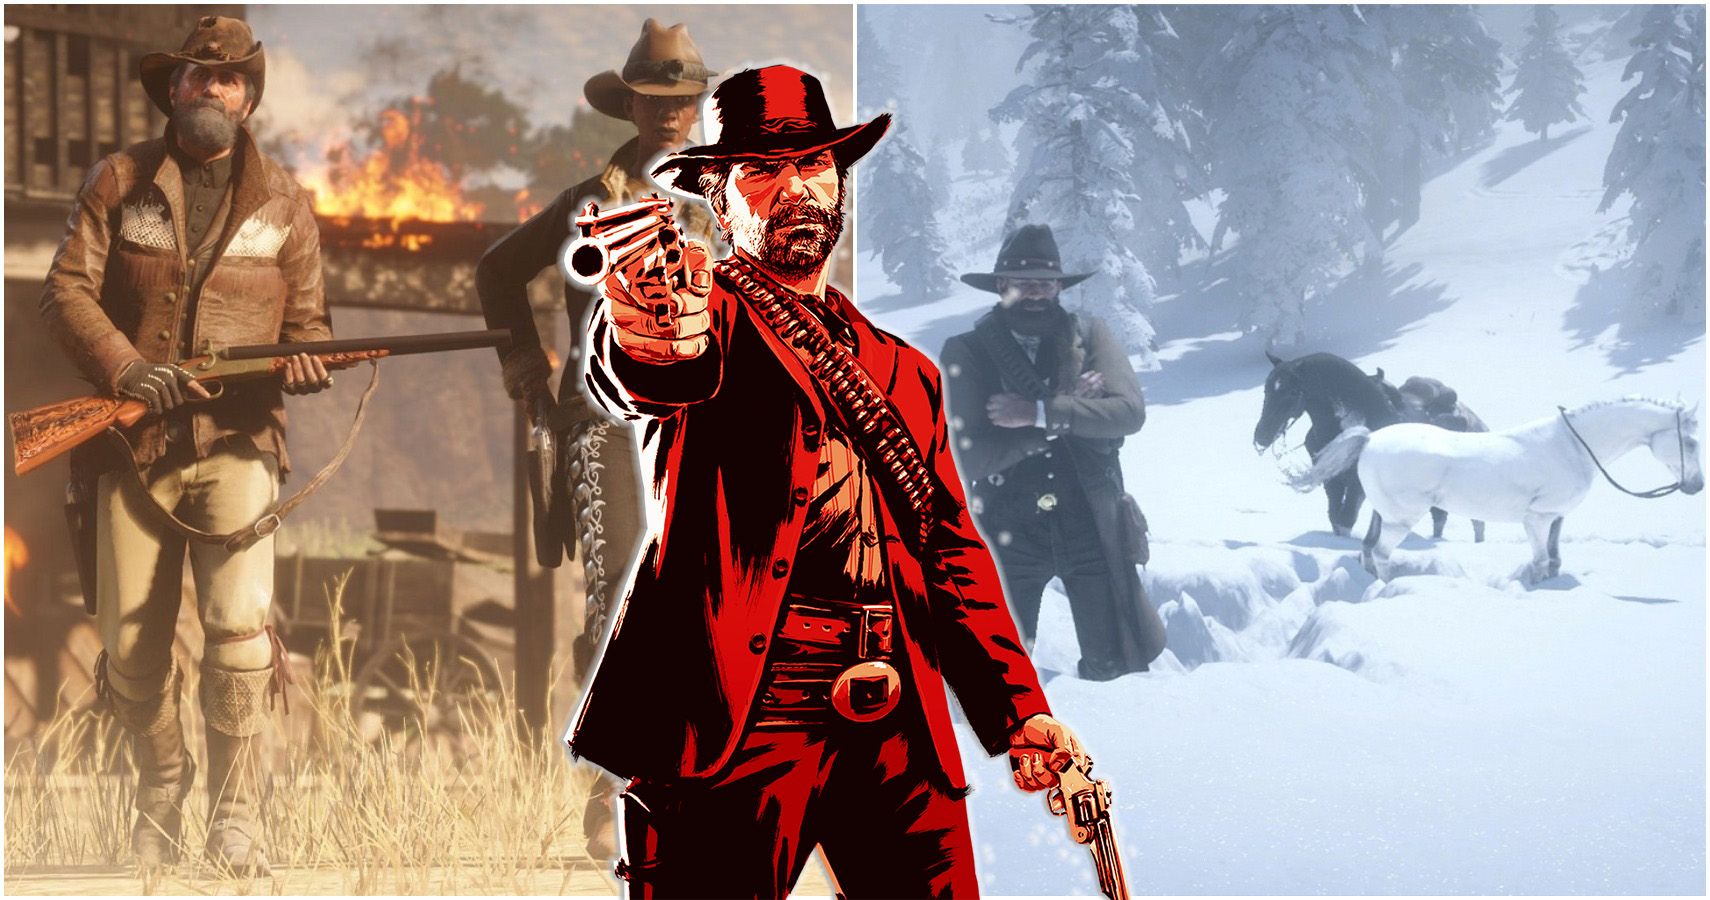 Det udmelding Ødelæggelse Red Dead Redemption 2: 20 Things To Do After You Beat The Game